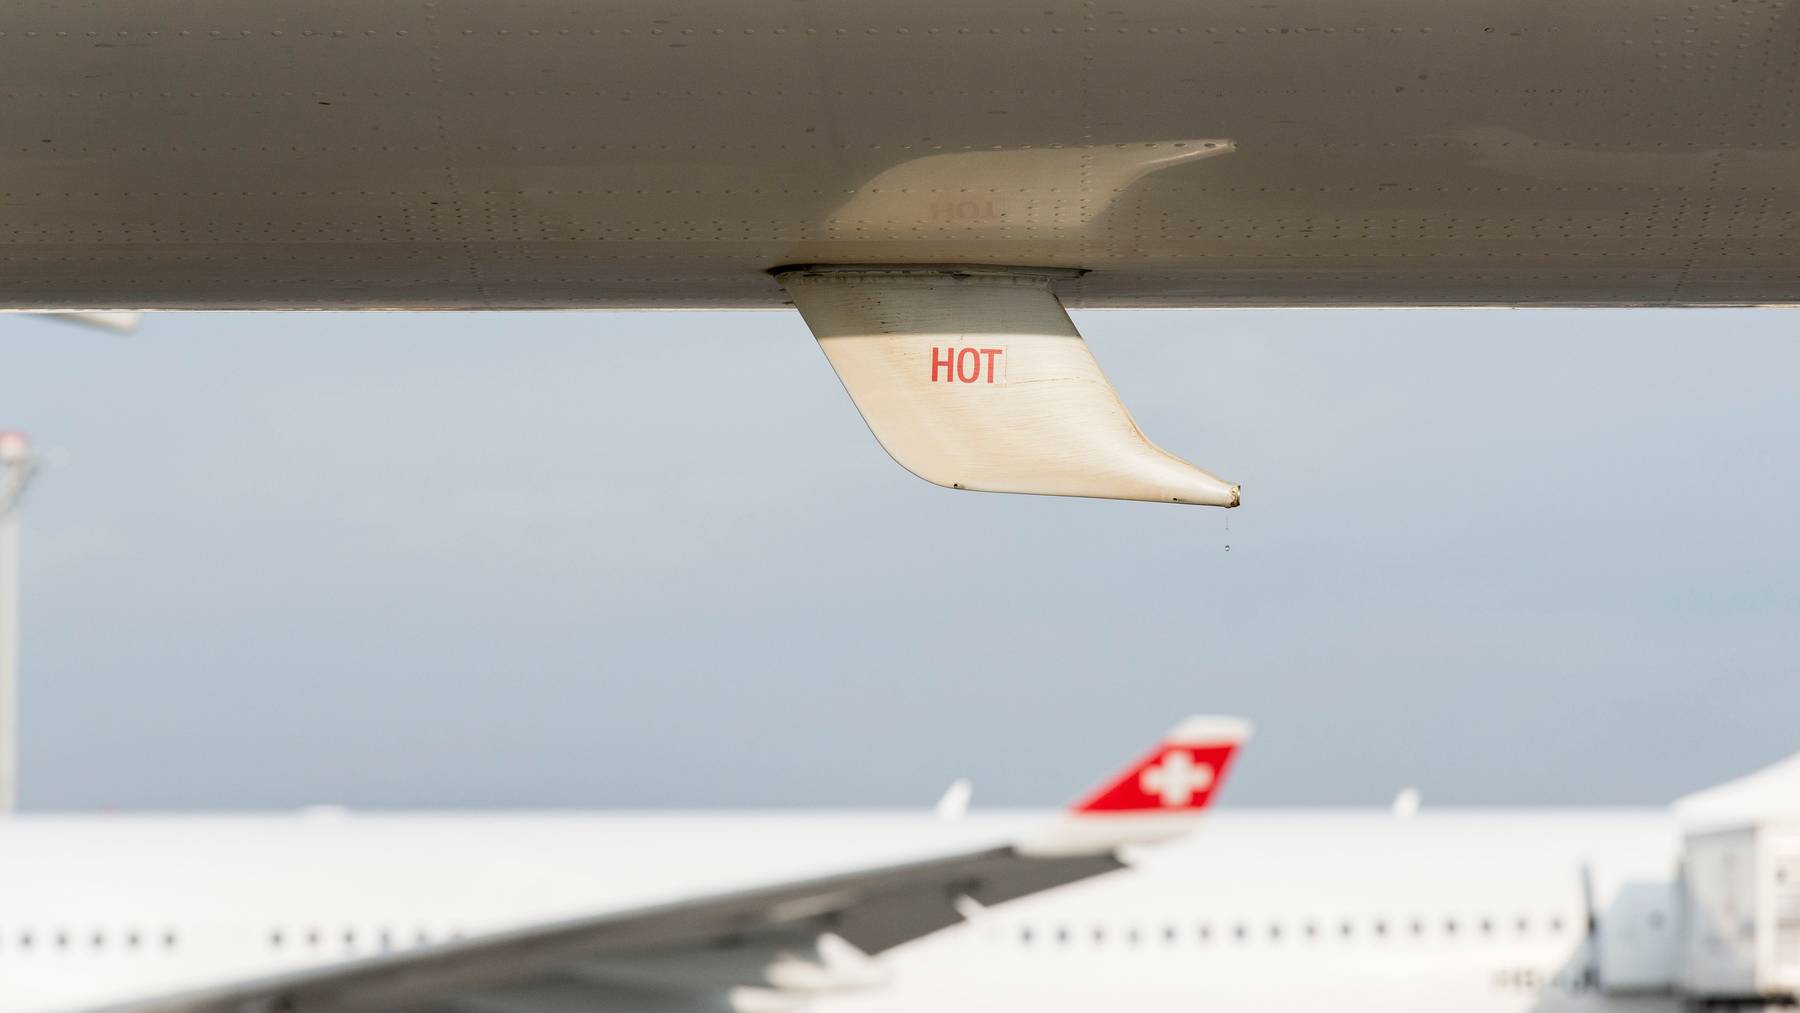 Die Sicherheit von Passagieren und Personal habe oberste Priorität, so die Swiss.